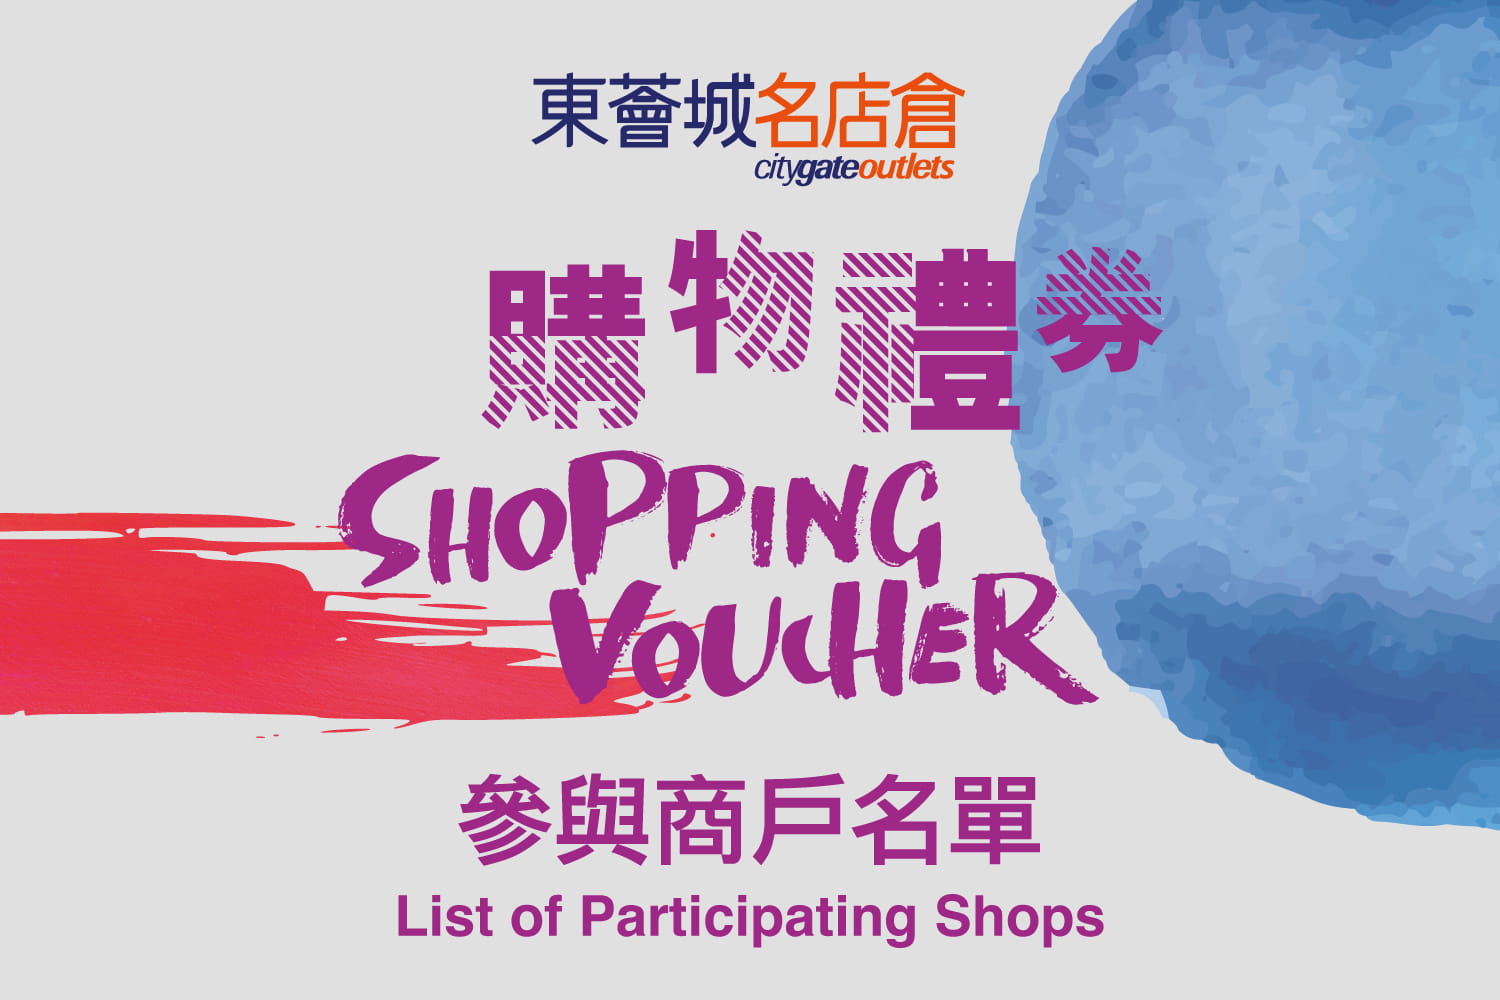 東薈城名店倉電子購物禮券參與商戶名單